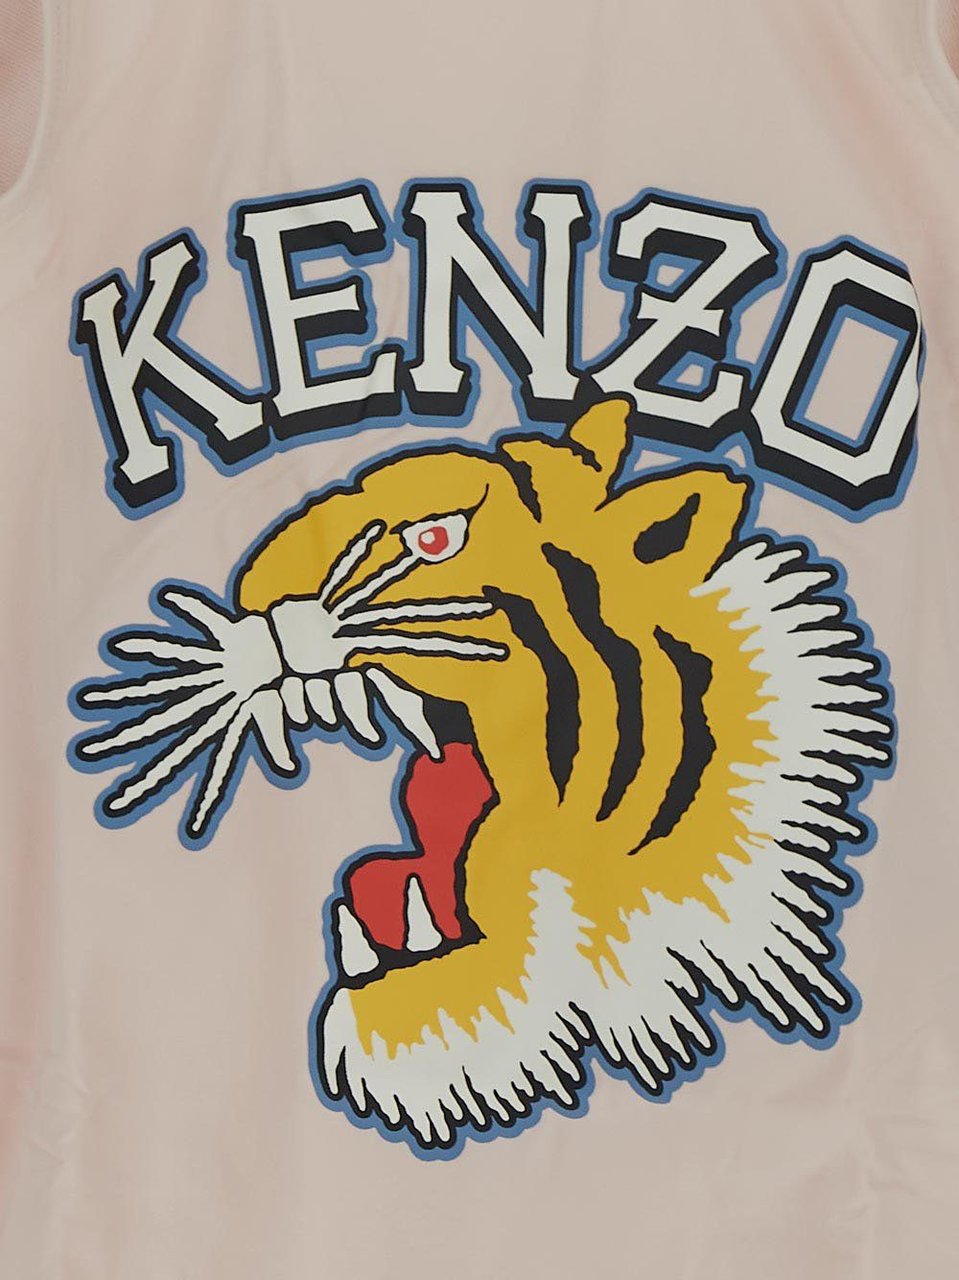 Kenzo Logoed Beachwear Roze